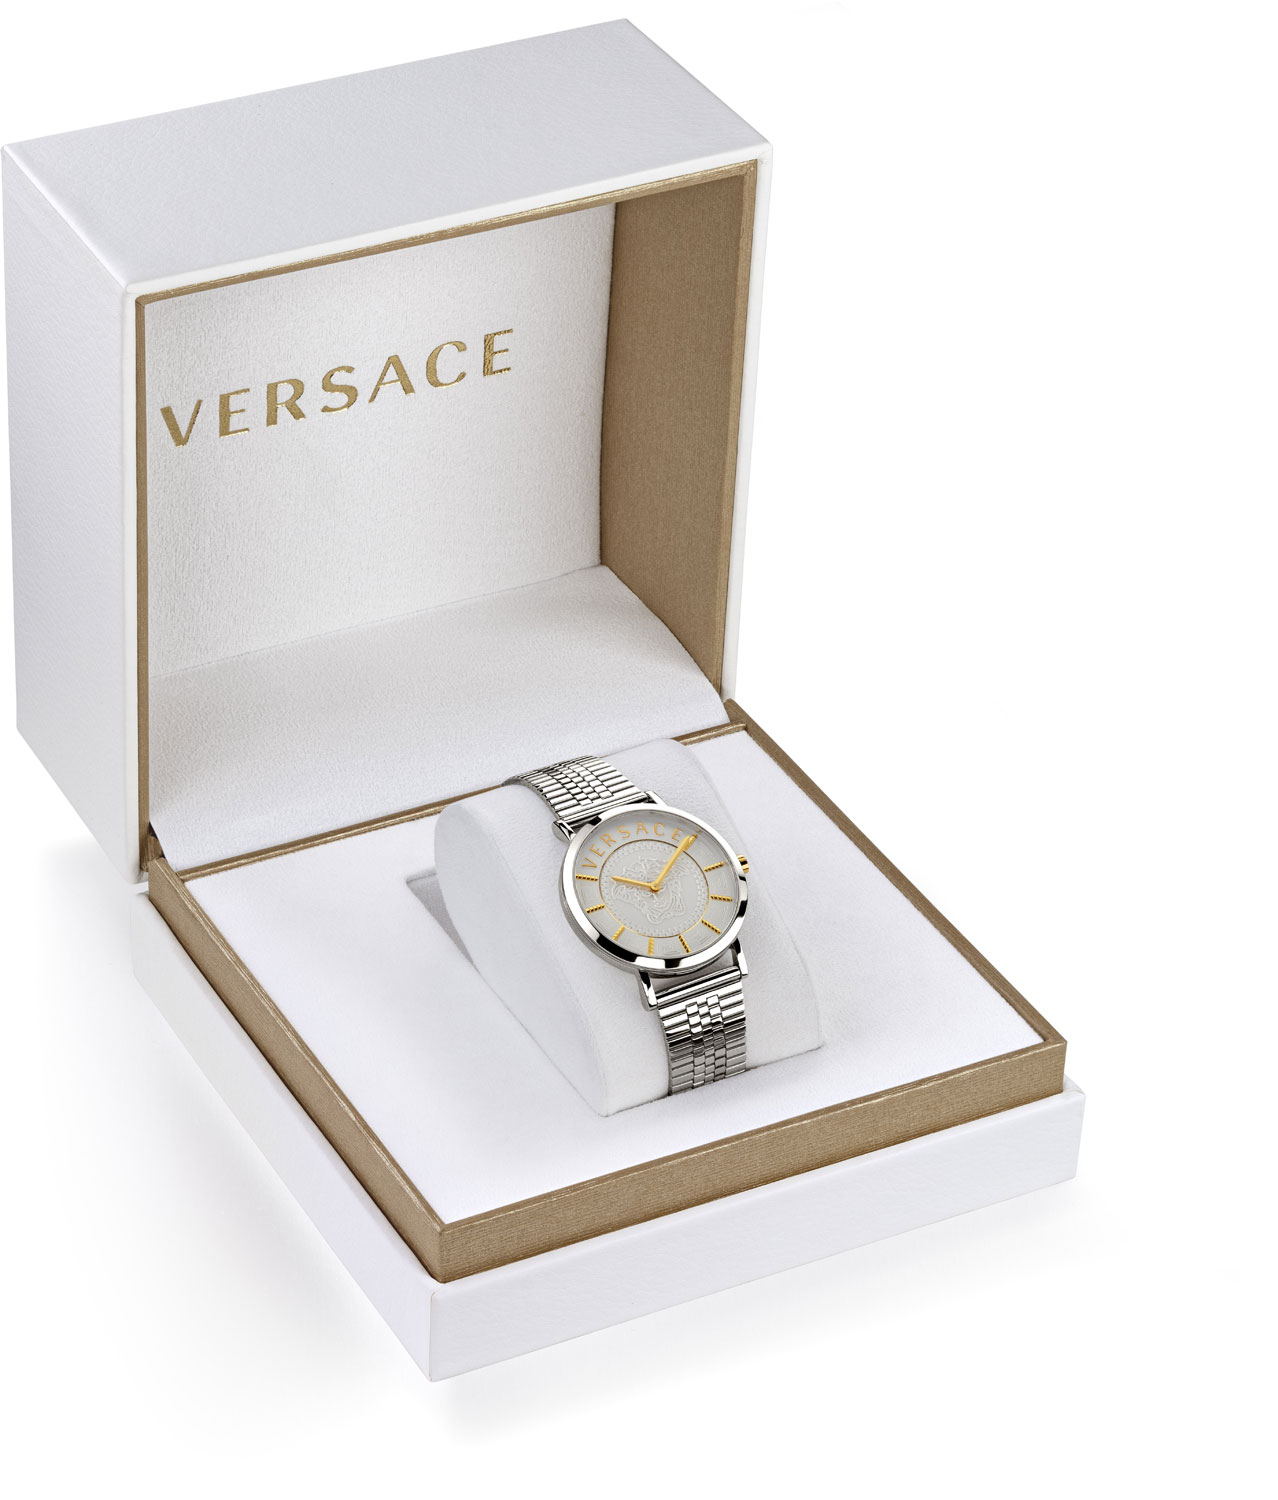 Наручные часы Versace VEK400521 — купить в интернет-магазине